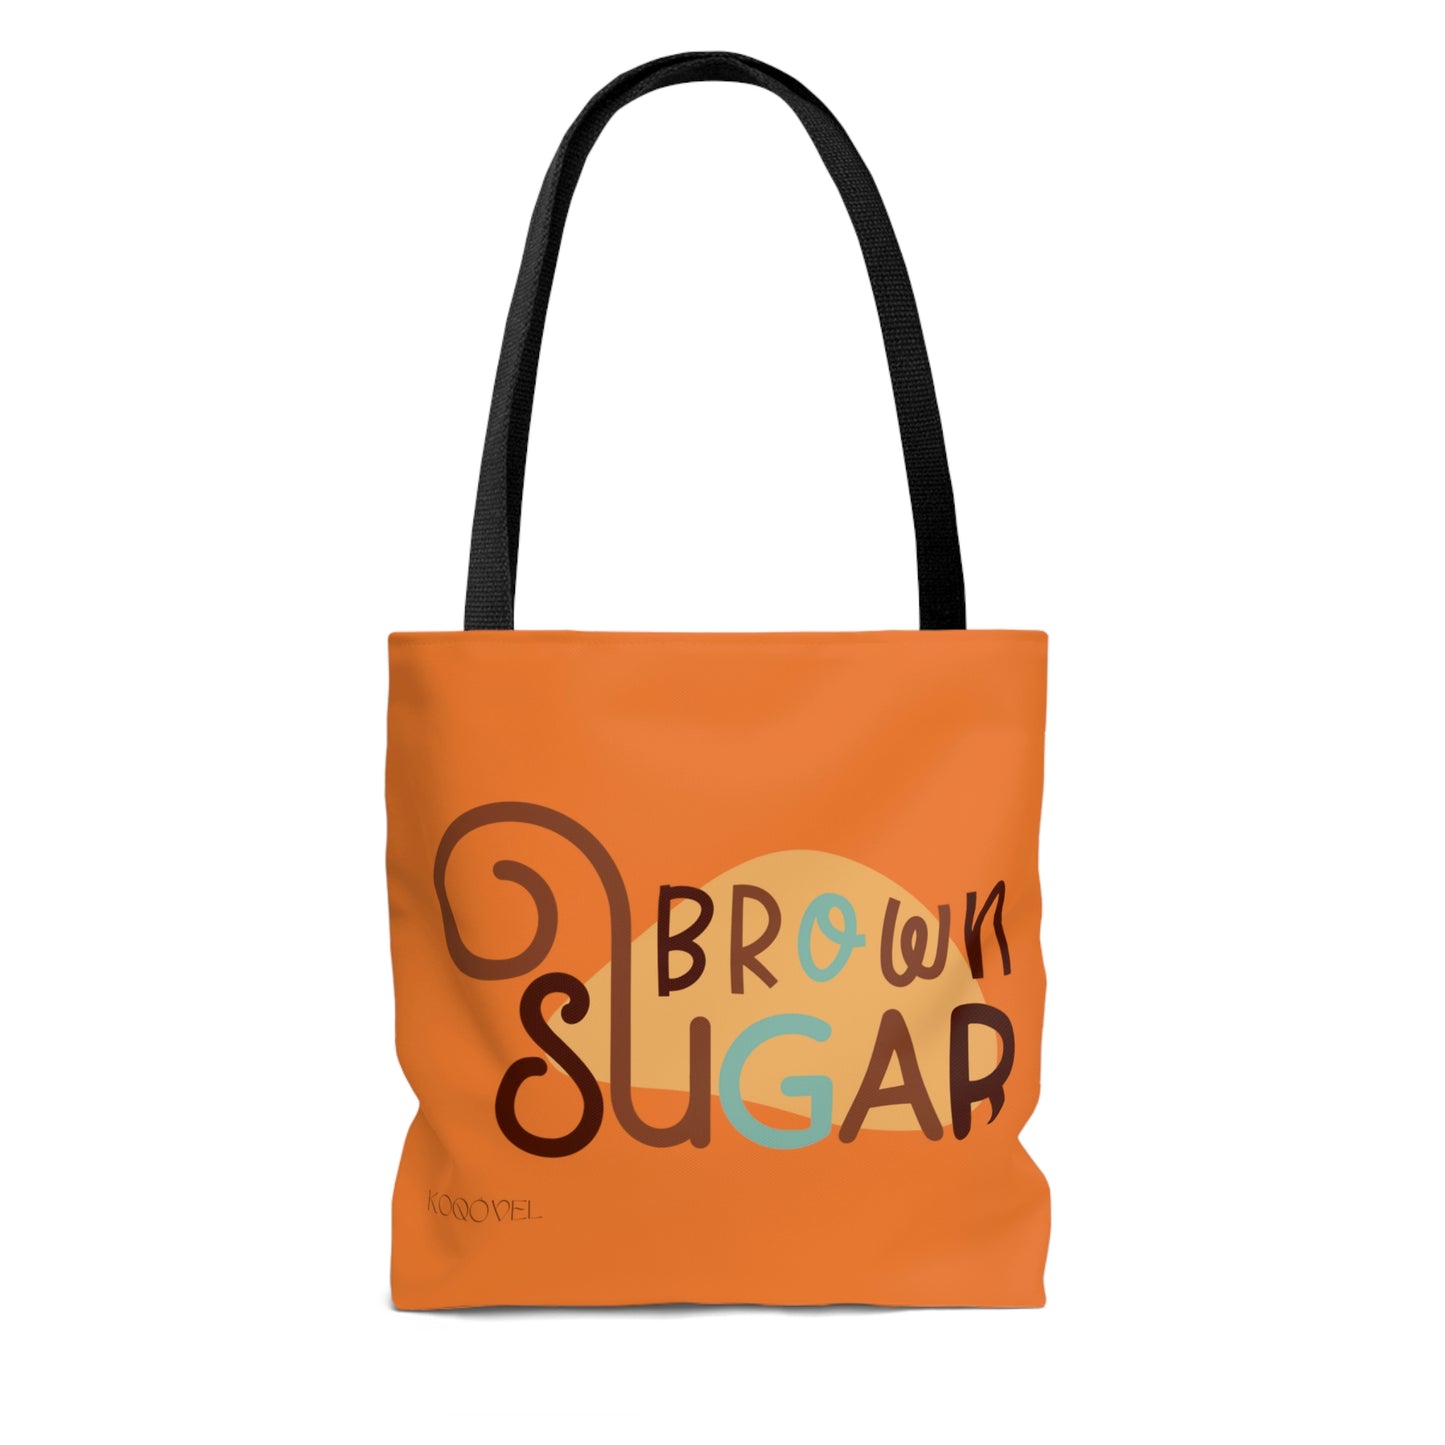 "Brown Sugar" Tote Bag